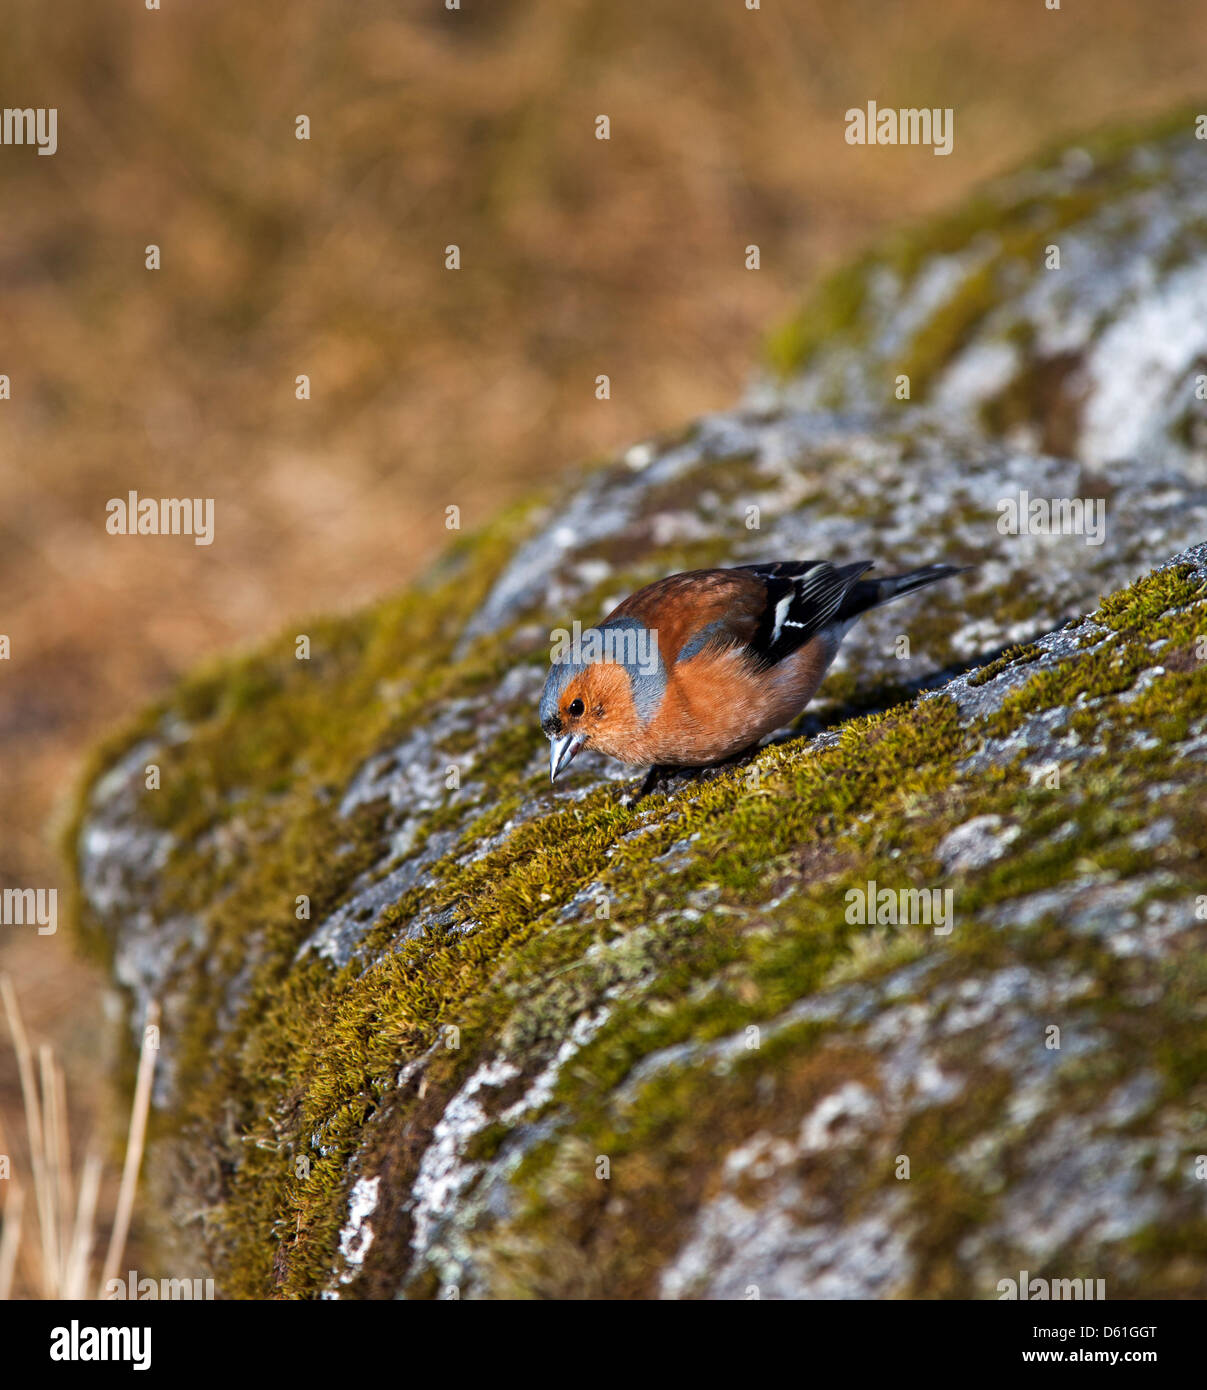 Buchfink-Männchen auf Felsen gelegen mit Moos bedeckt Stockfoto